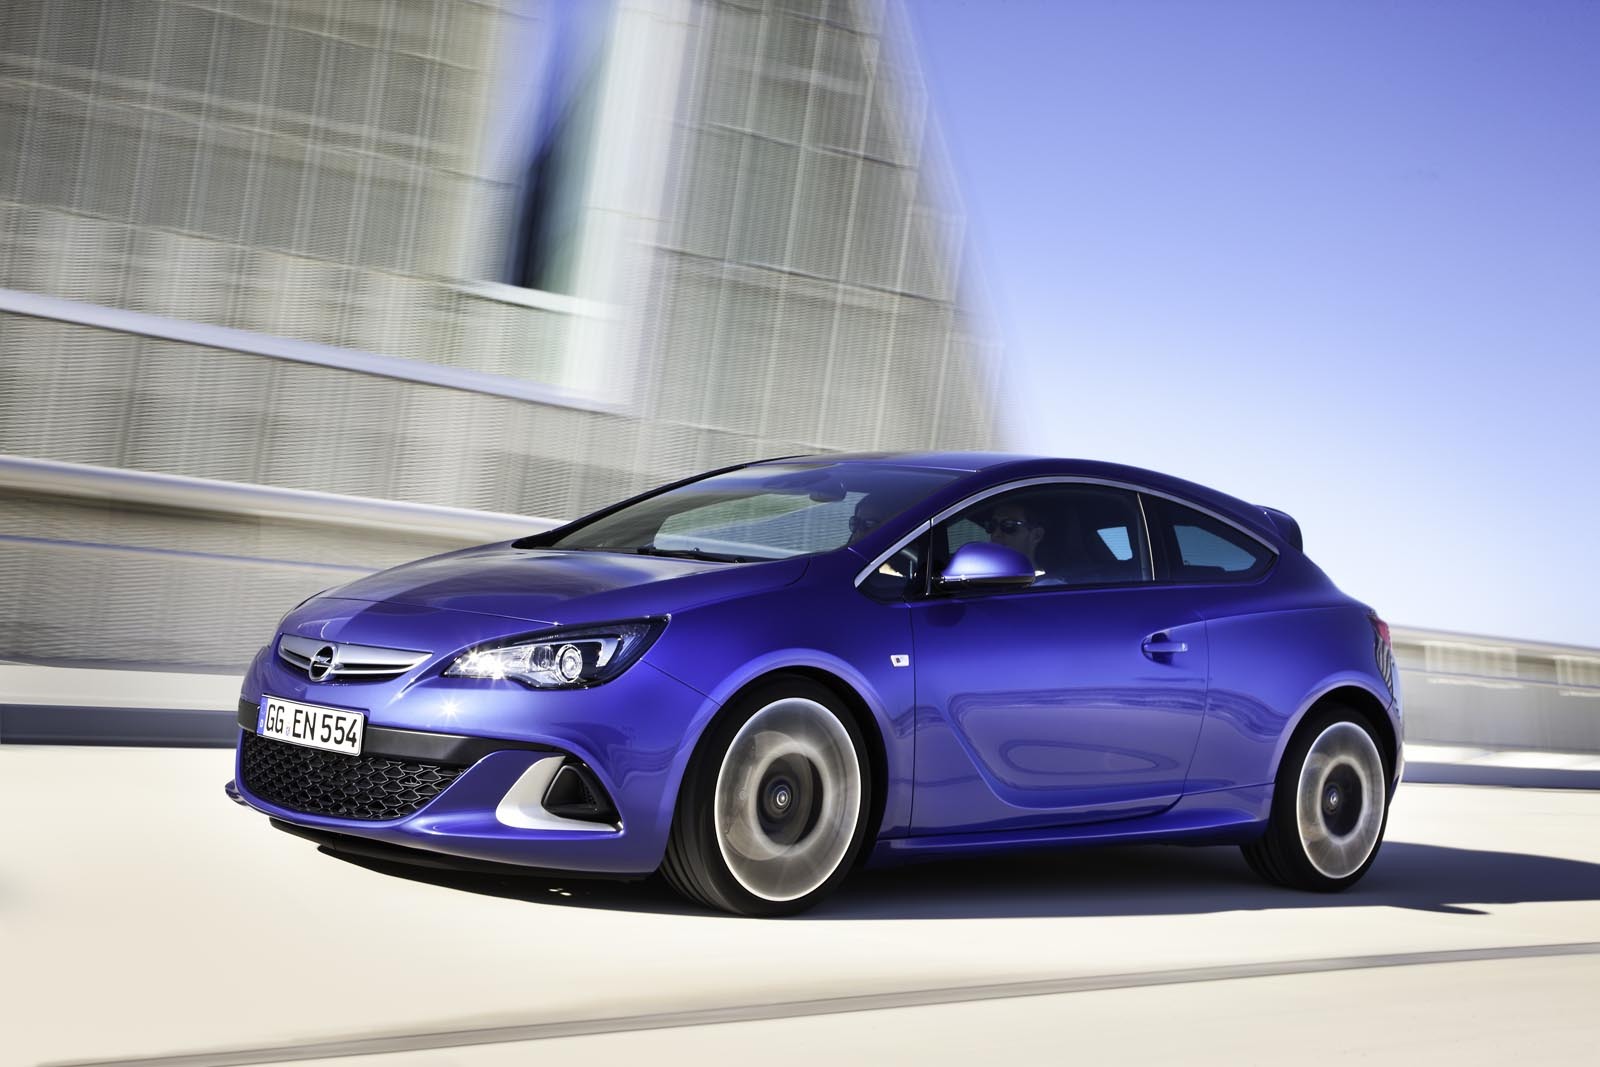 Pana acum au fost vandute 641.000 de modele din actuala generatie Opel Astra in Europa